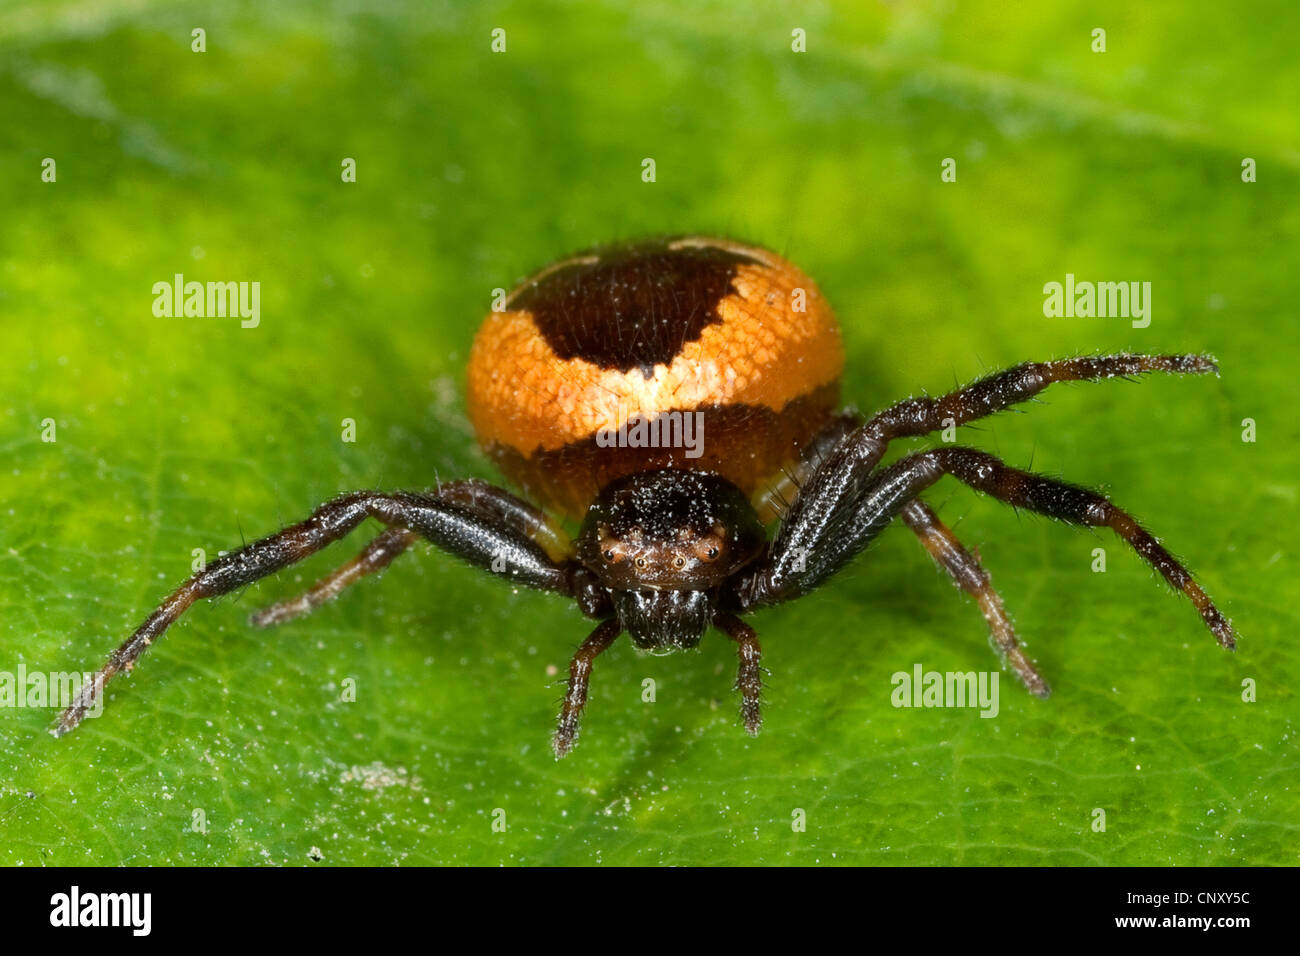 Araignée crabe rouge (Synema globosum, Synaema globosum), assis sur une feuille, Allemagne Banque D'Images